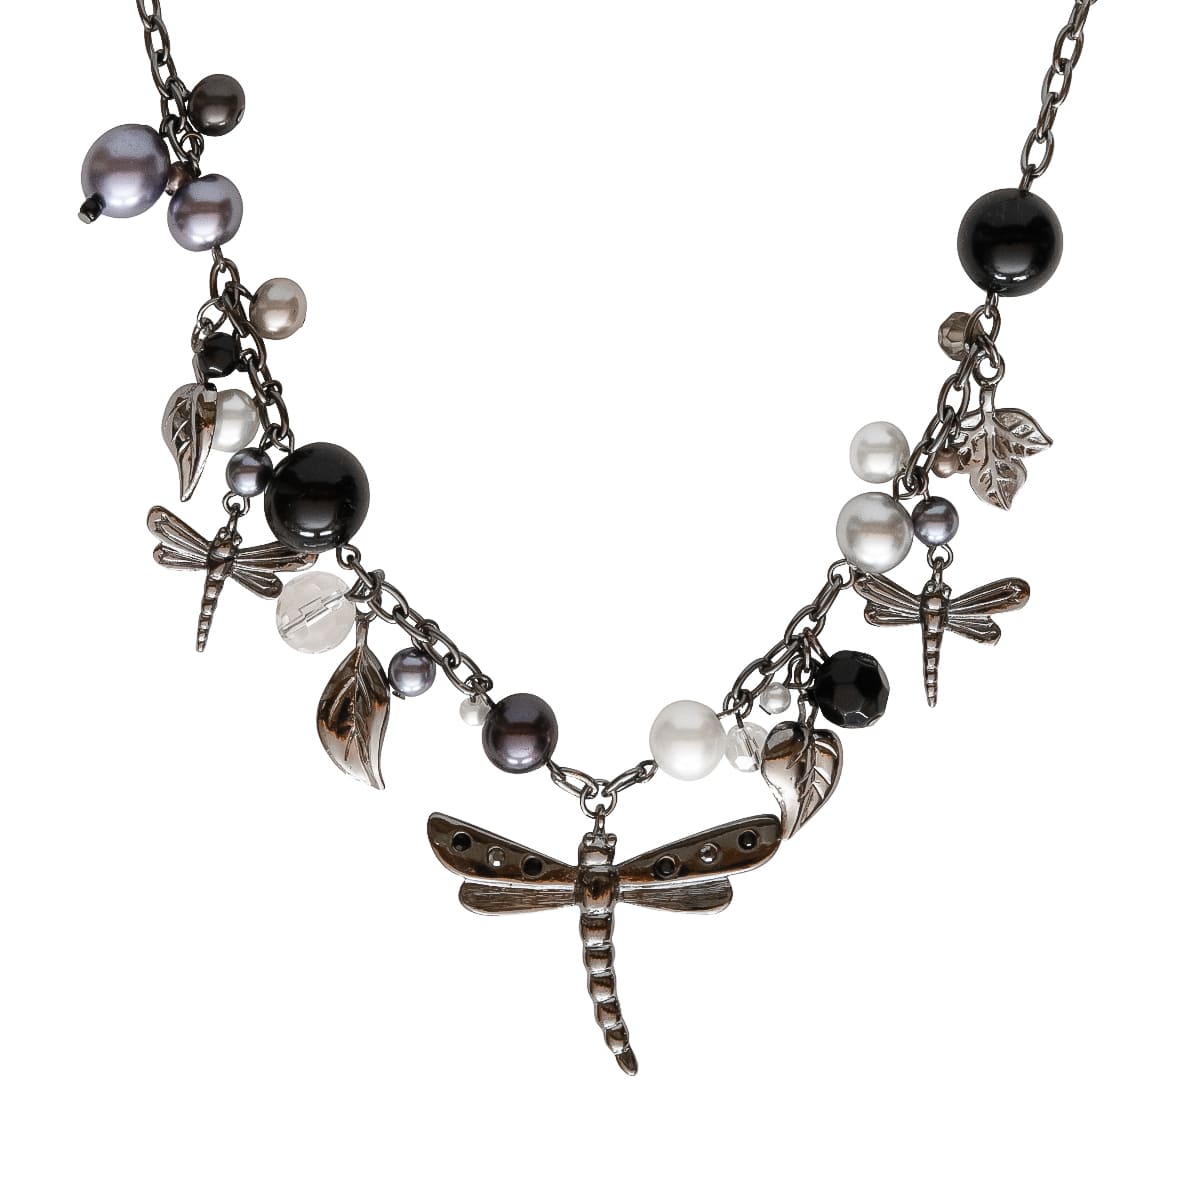 K.V. Fuchs Design Schmuck Damen Halskette in silber mit Schmetterling, Perlen in grau, schwarz, weiß und Zirkonia in grau, schwarz »K-3001«